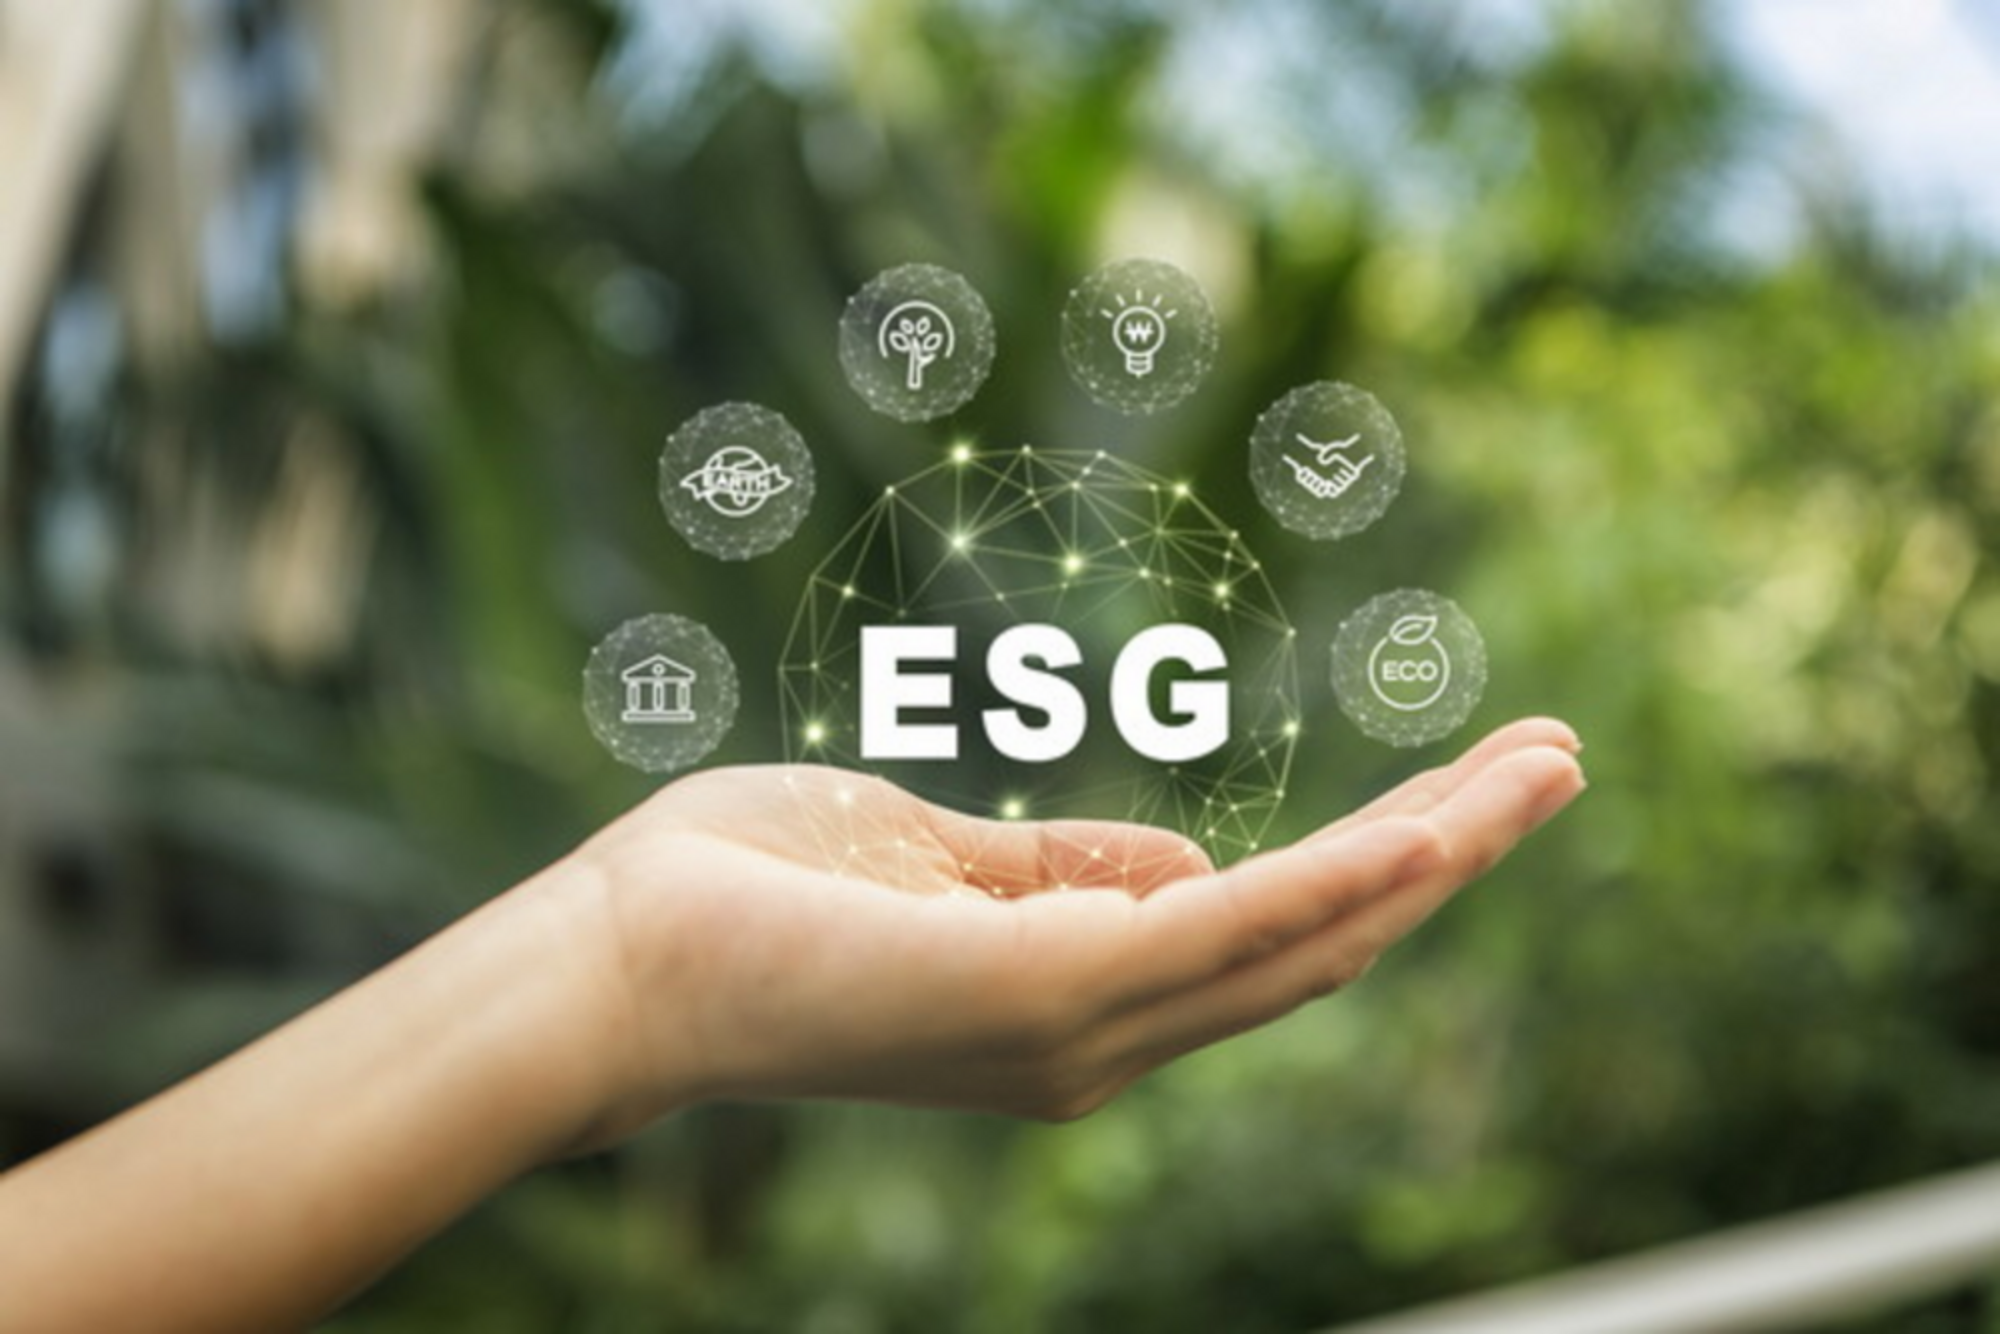 ESG, ESG 경영, ESG 디지털 전환, 디지털 전환, 트윈 트랜스포메이션